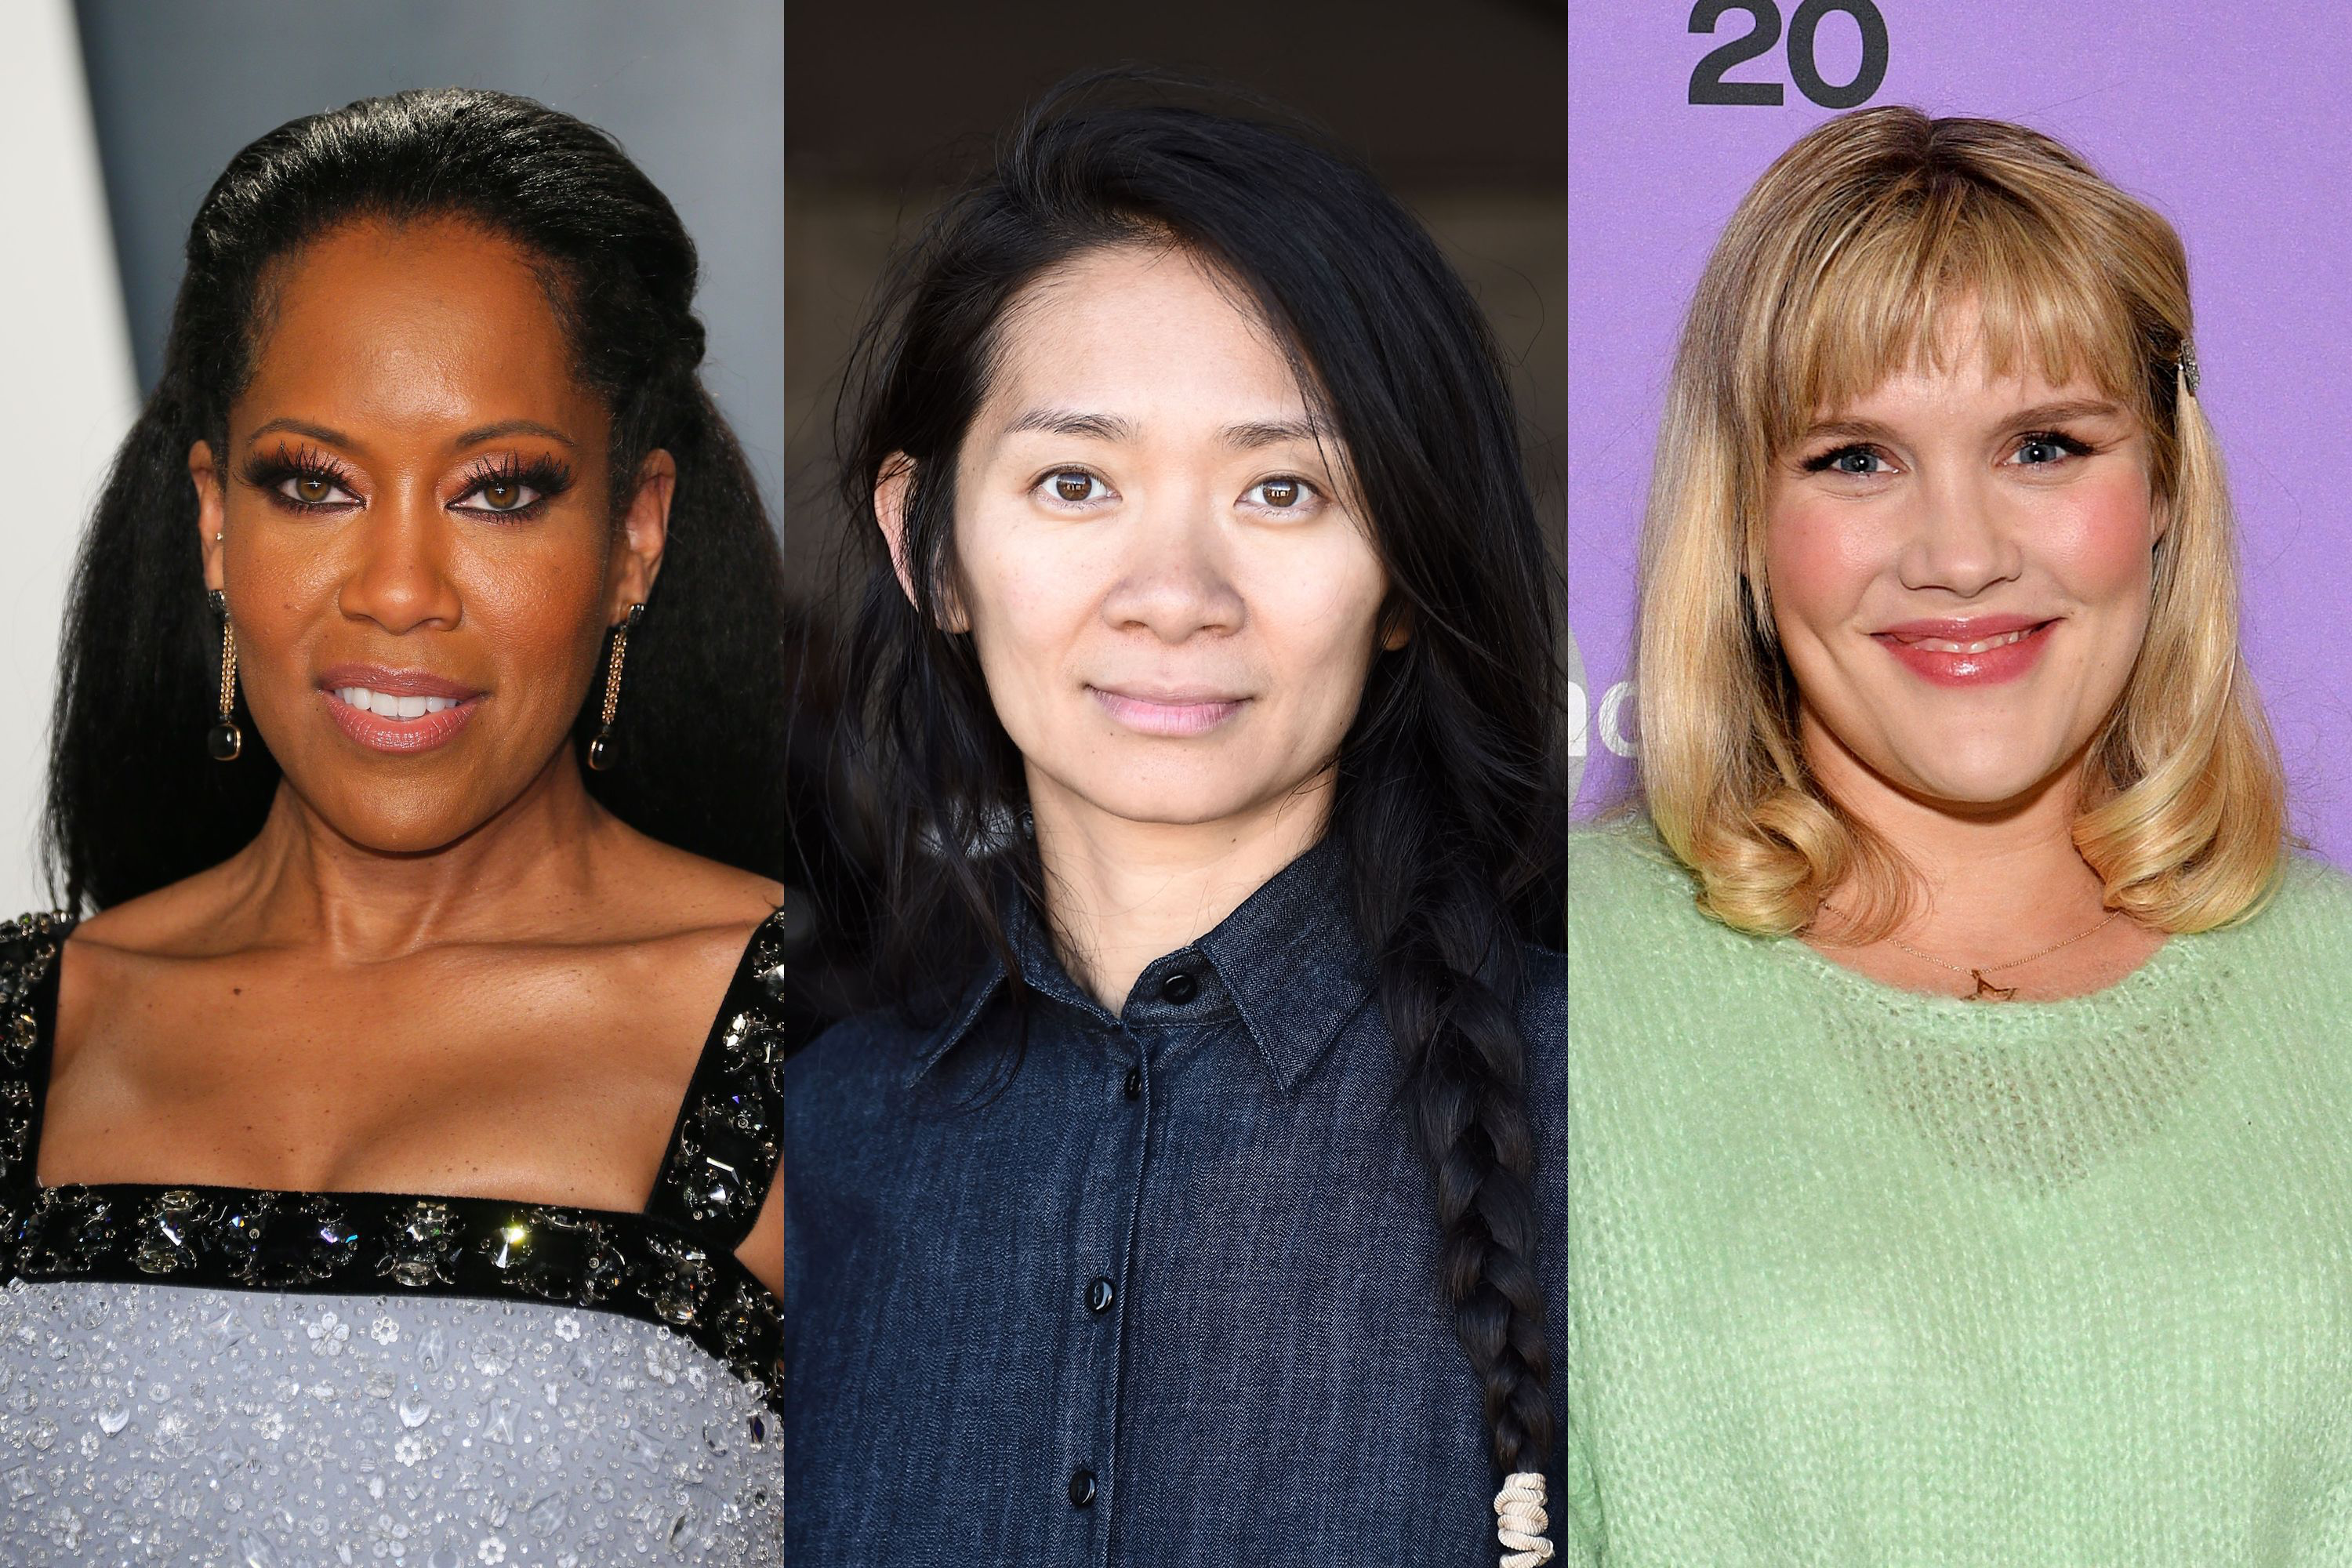 2021 Golden Globes Make History Nominating 3 Female Directors